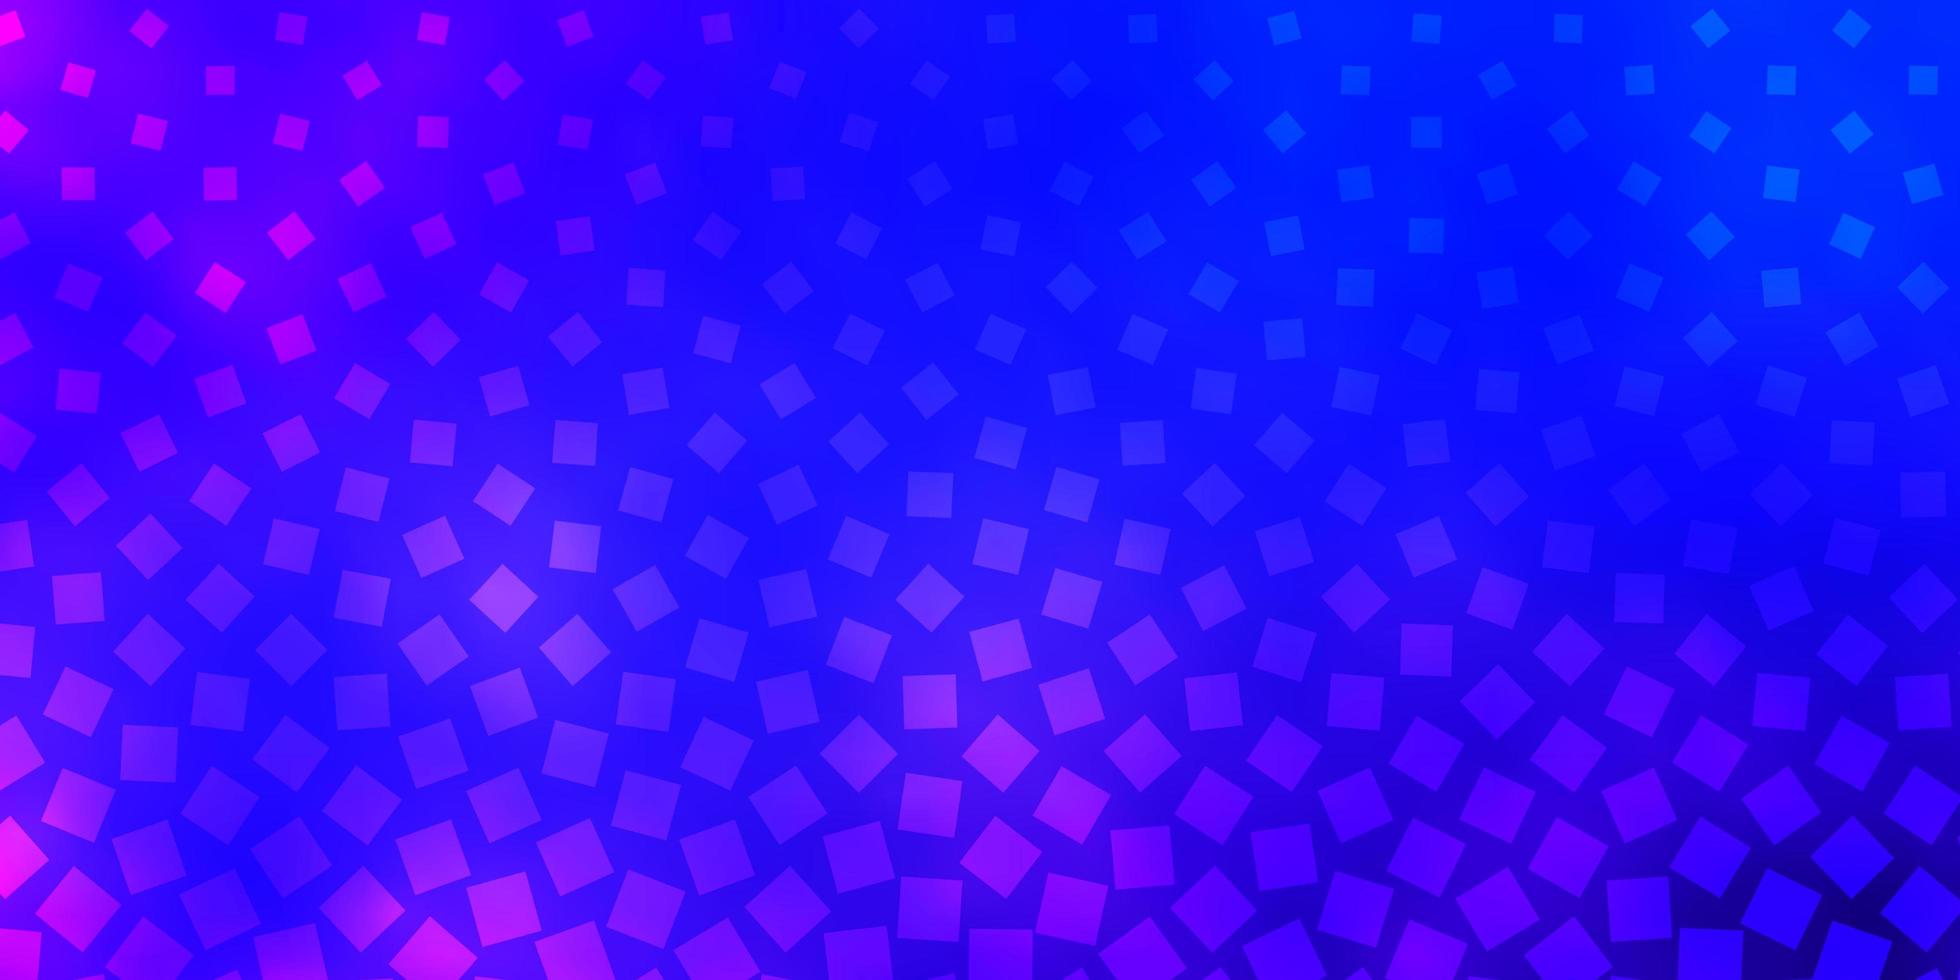 ljusblå röd vektorbakgrund i polygonal stil ny abstrakt illustration med rektangulära former mönster för reklamannonser vektor